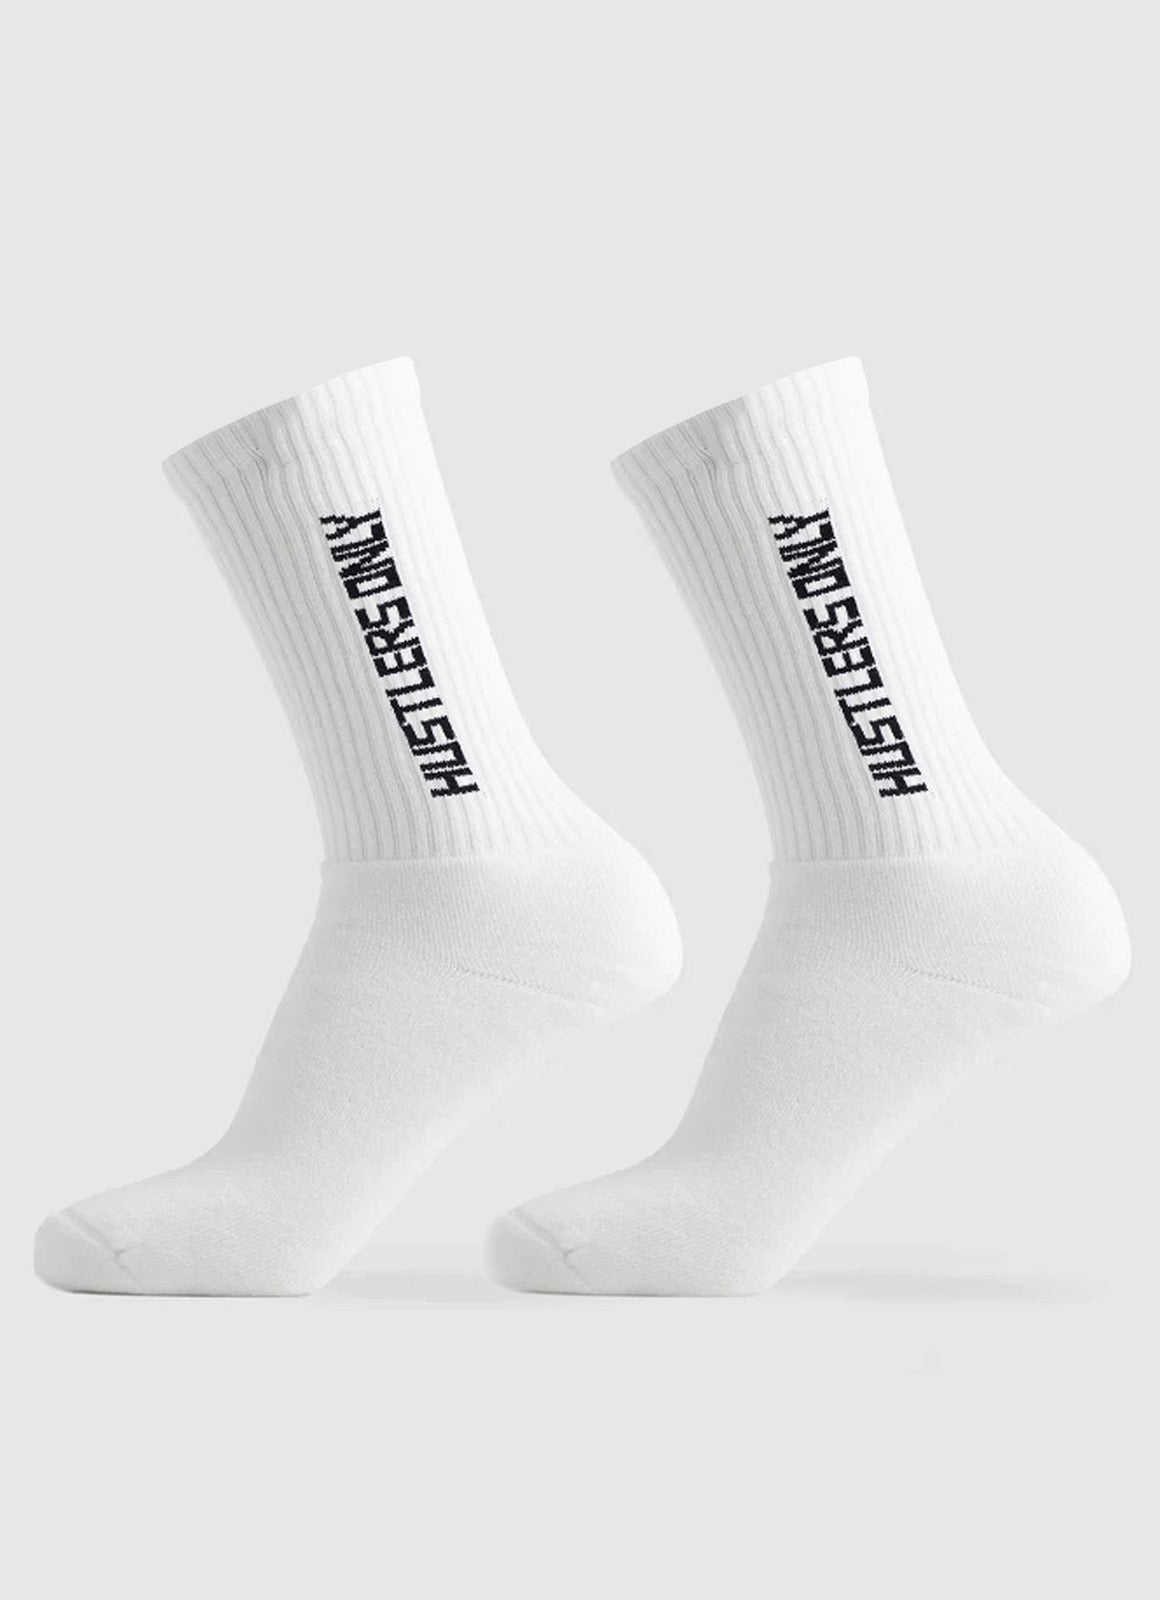 Training Socks - White